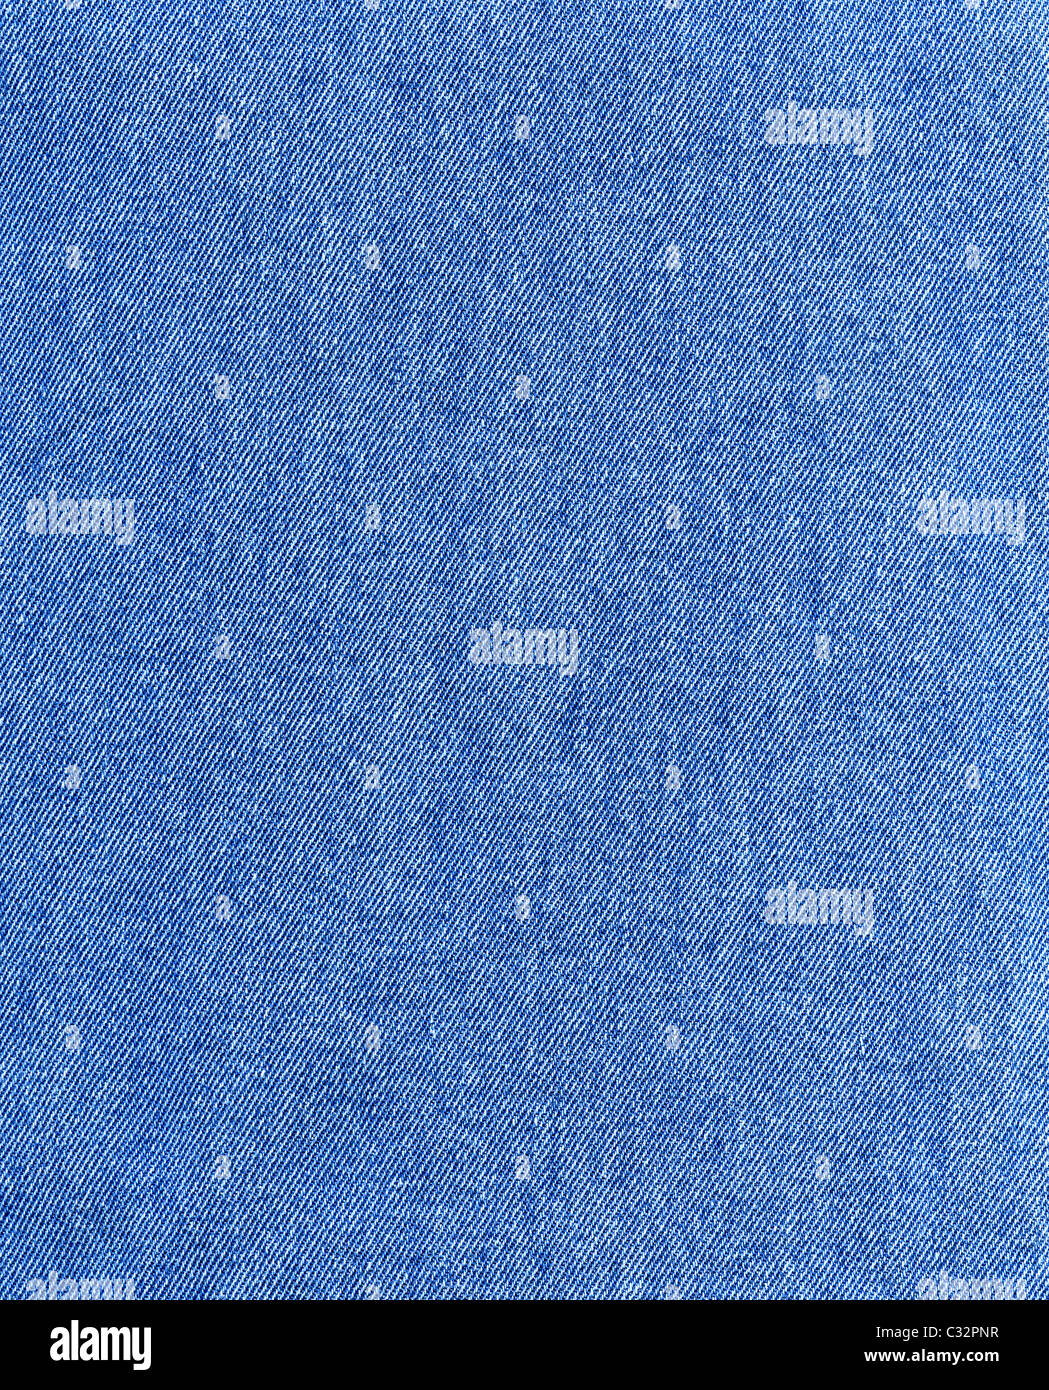 Testurizzato a strisce blu jeans denim tessuto di lino sfondo Foto Stock